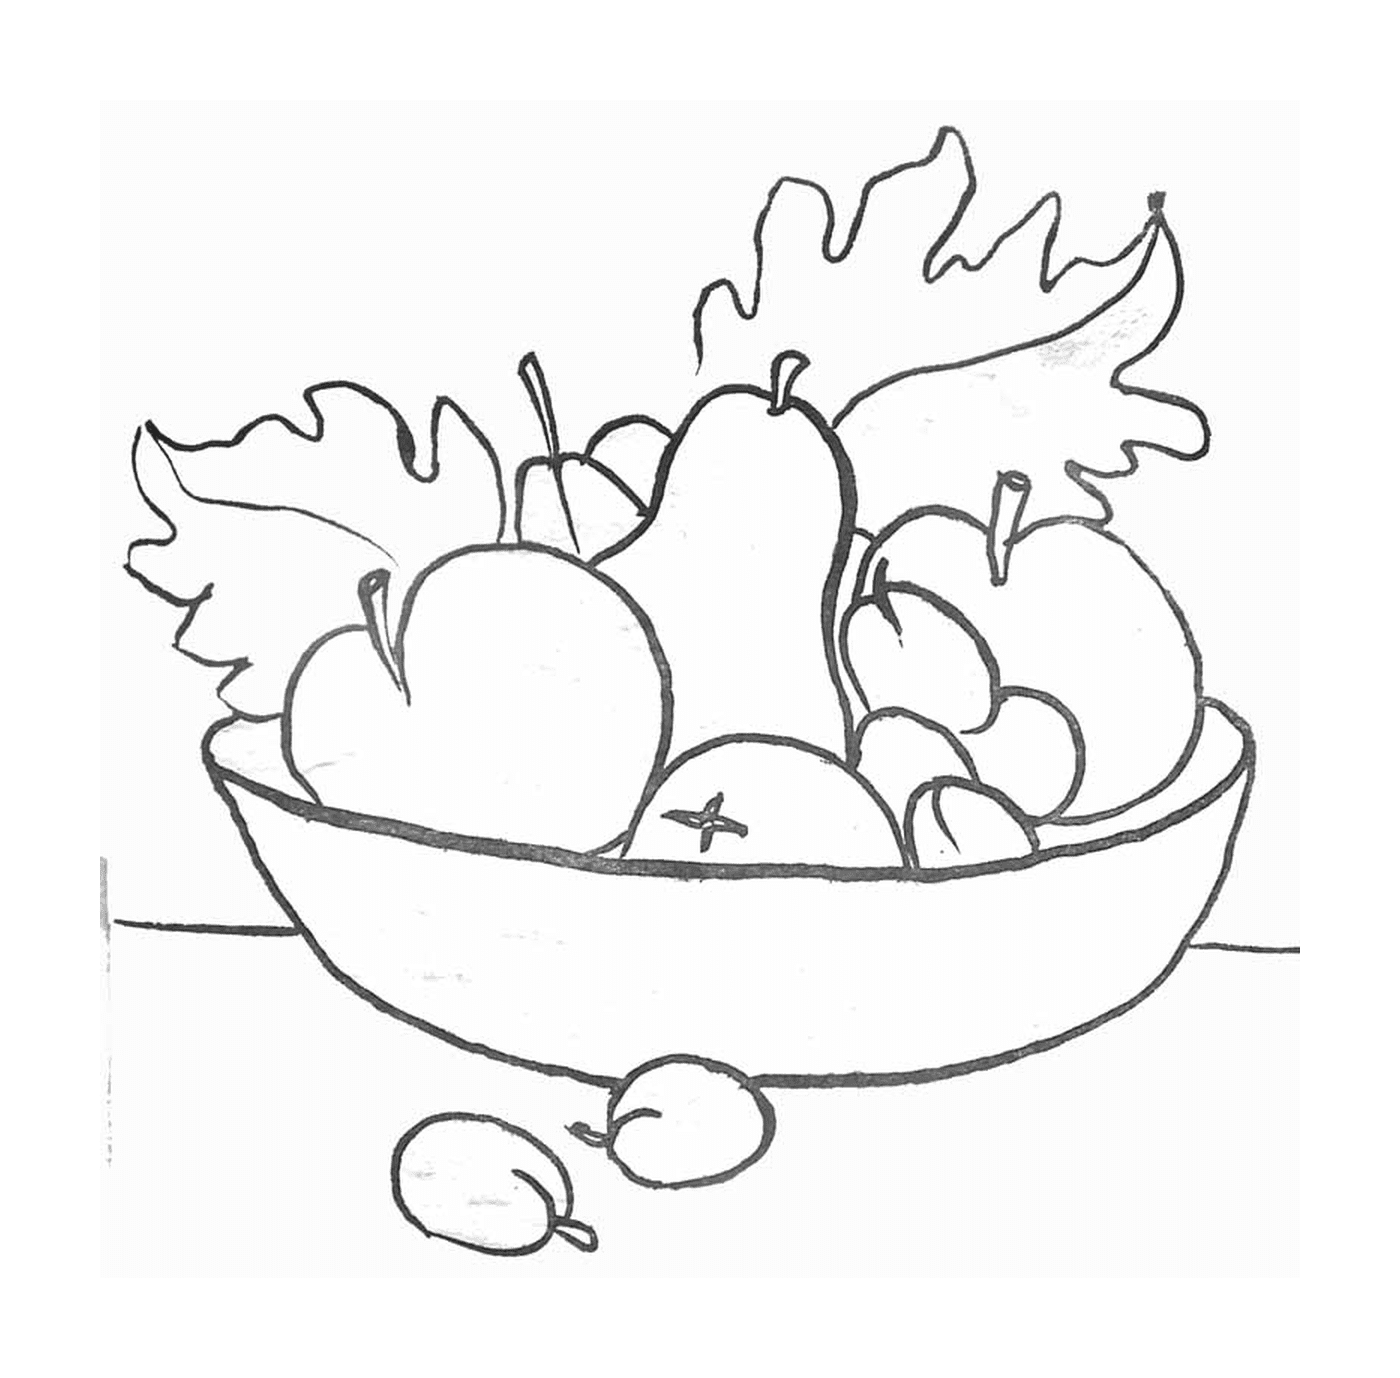  碗里装满苹果和梨子, 